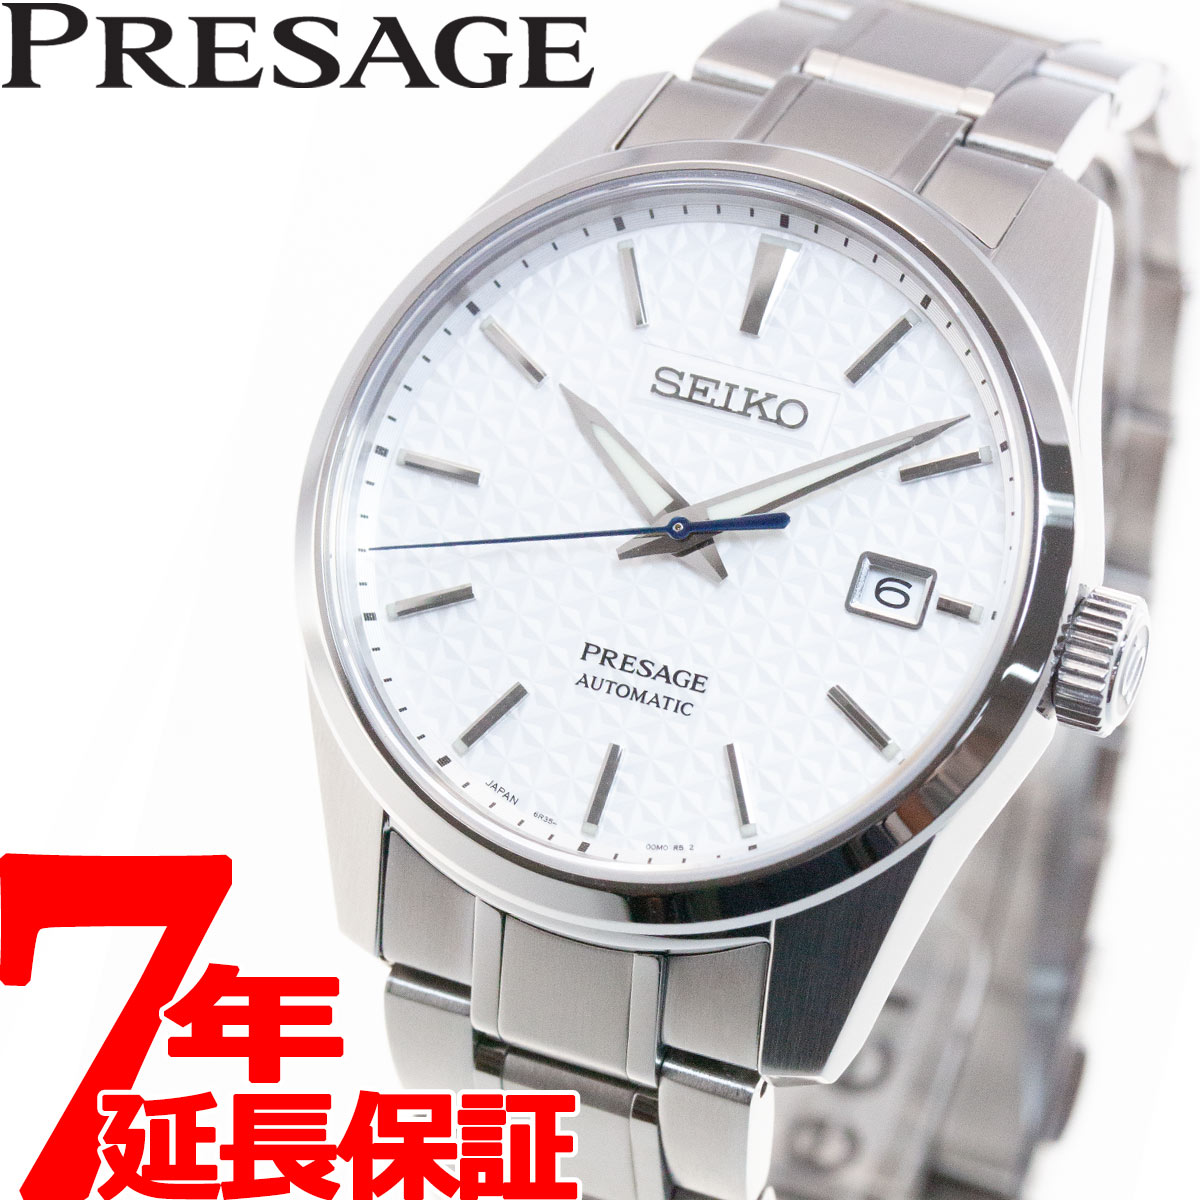 ファッション小物・ストライプストール・ストール・縞模様 セイコー メカニカル プレザージュ プレステージライン 日本製 自動巻き メンズ 腕時計 SARX075  SEIKO Mechanical PRESAGE ホワイト 